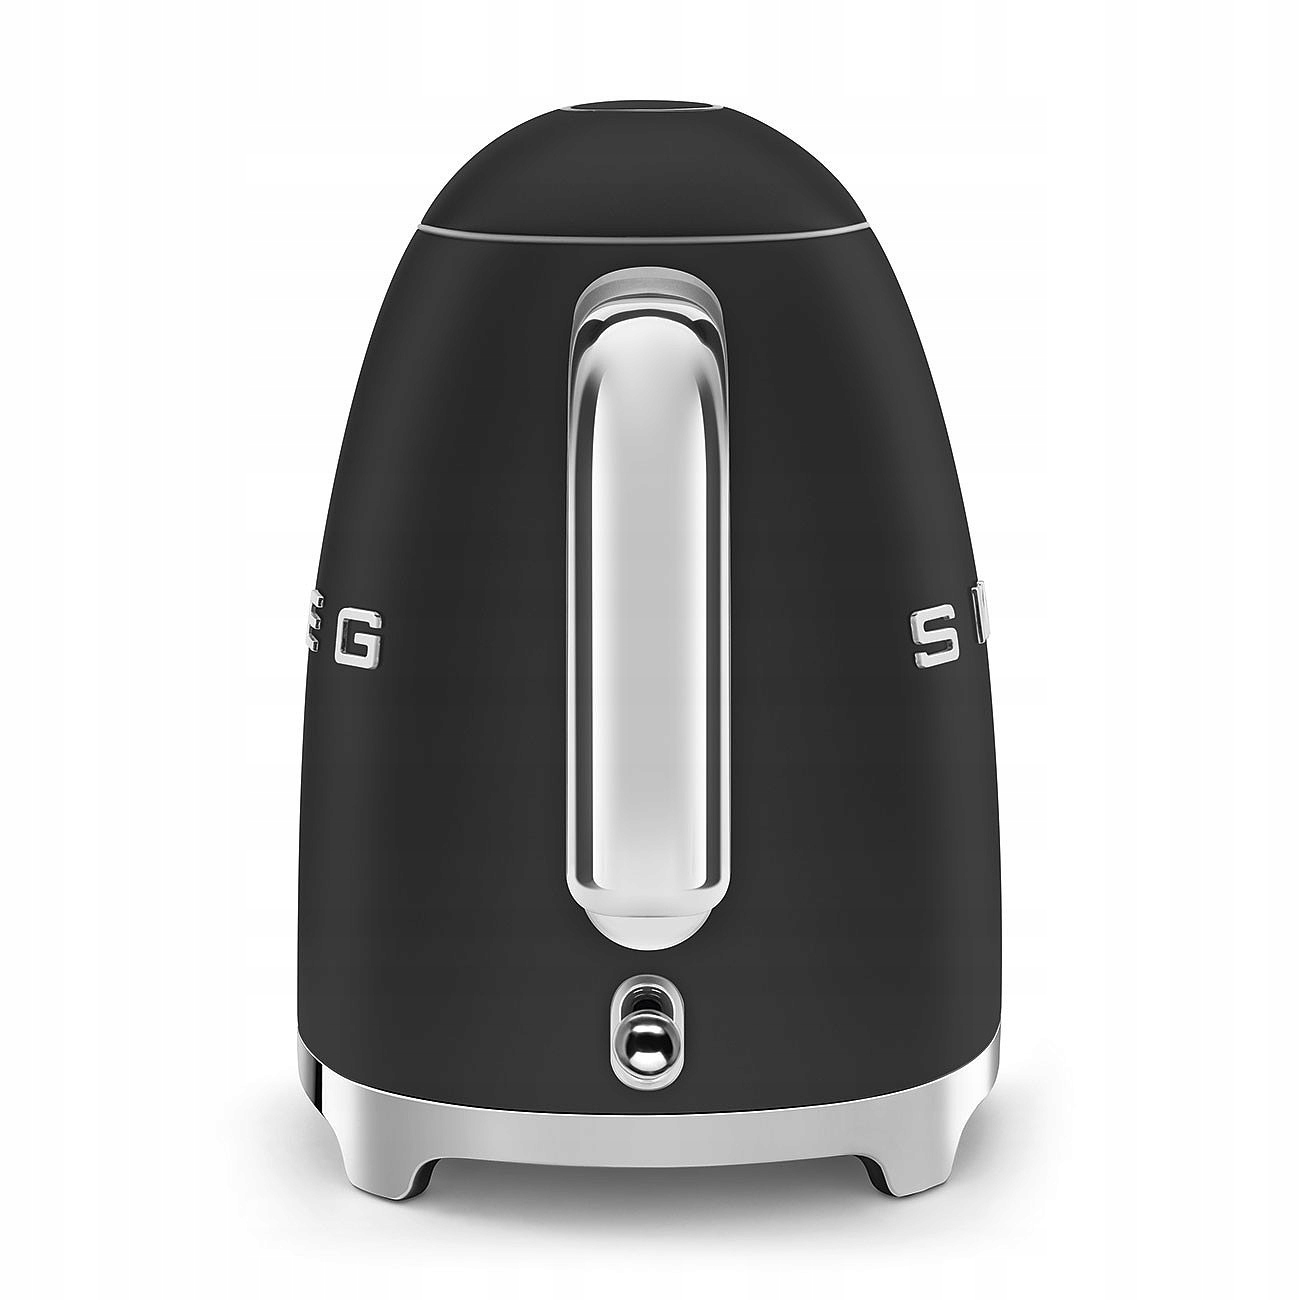 VIP-пропозиція - SMEG - Електричний чайник, чорний, переважає чорний колір